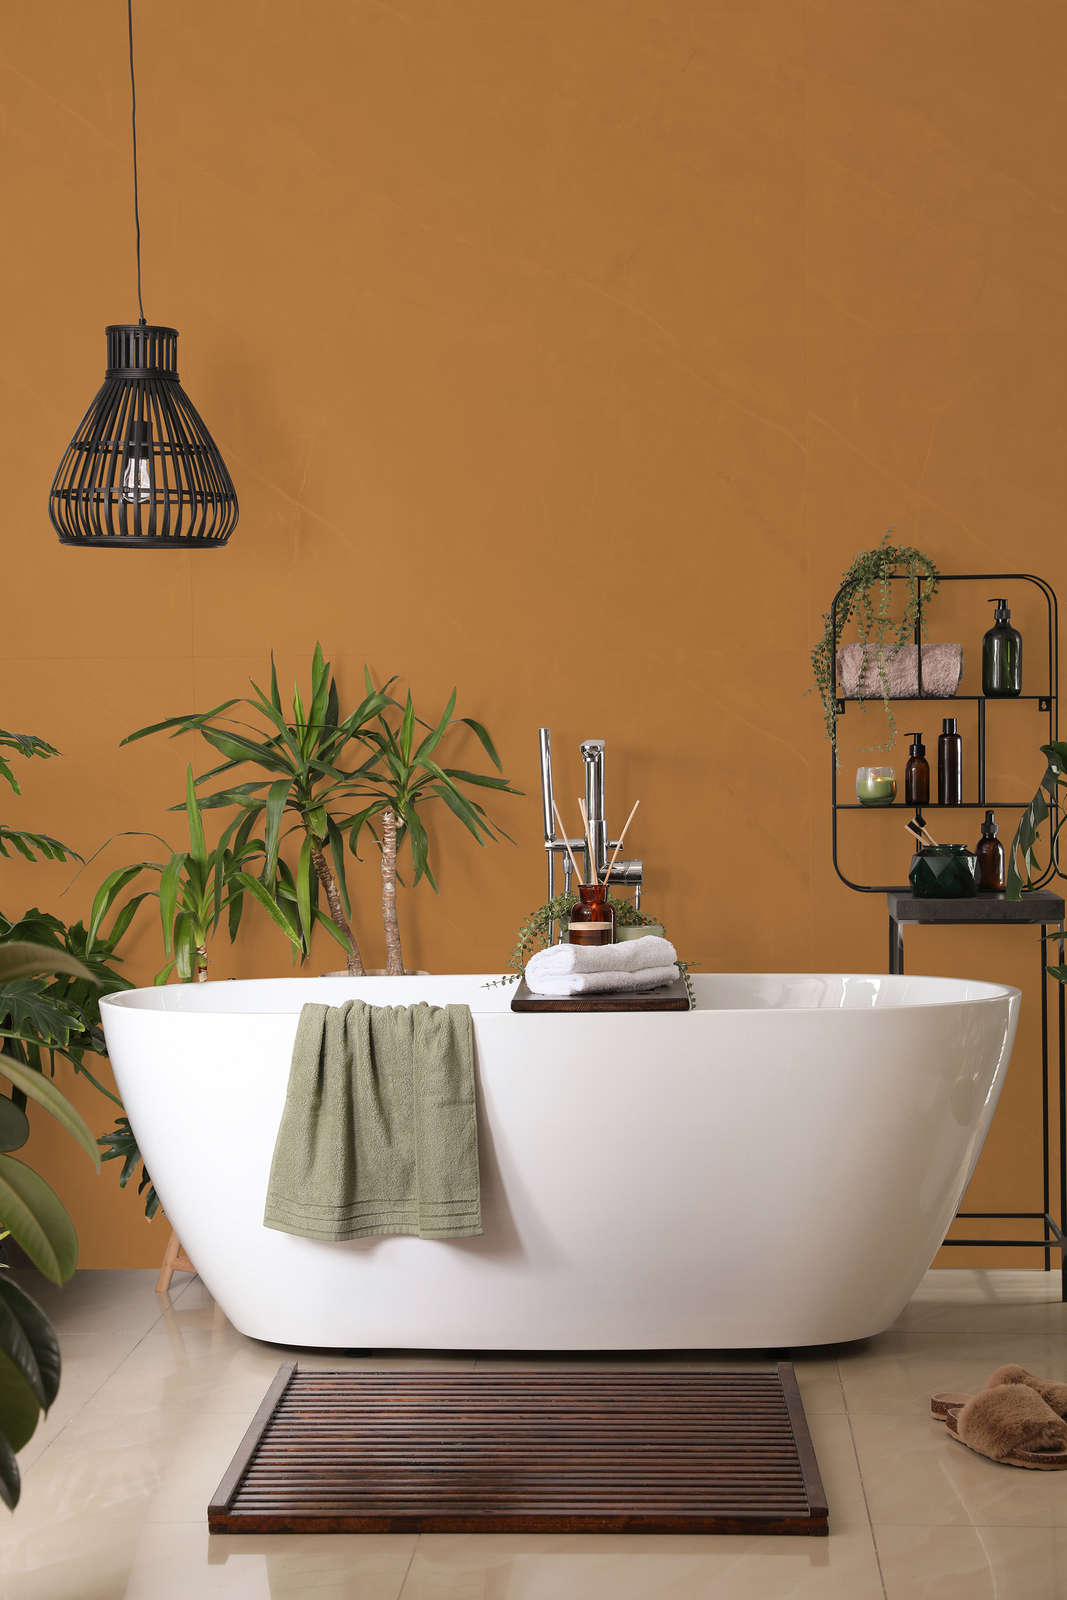             Pittura murale Premium marrone chiaro forte »Beige Orange/Sassy Saffron« NW814 – 2,5 Litri
        